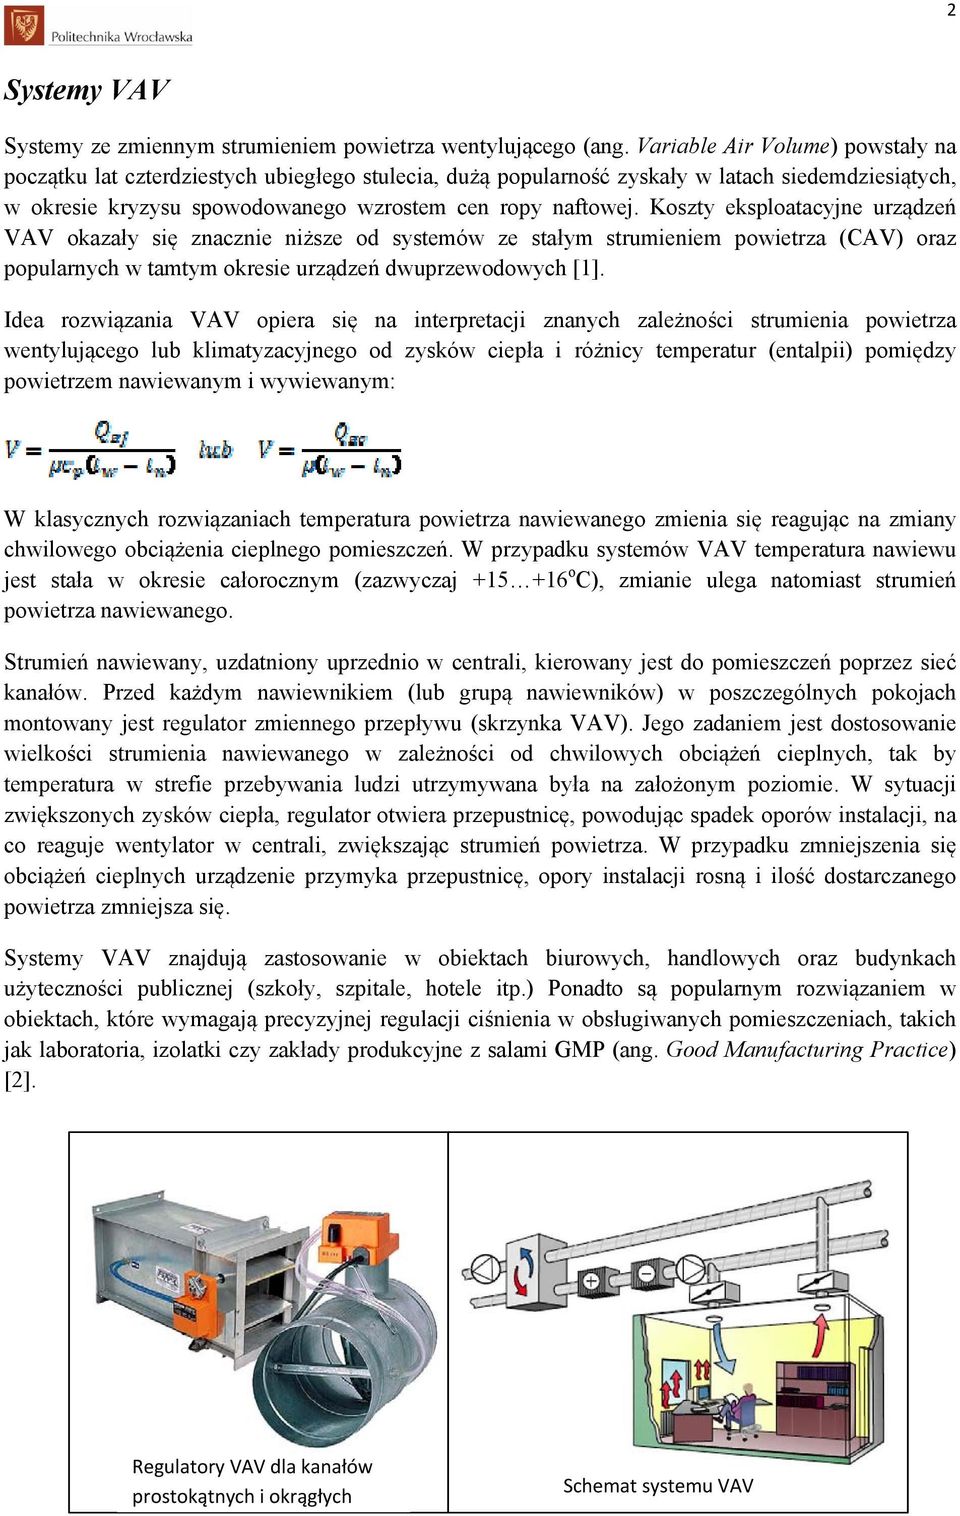 Koszty eksploatacyjne urządzeń VAV okazały się znacznie niższe od systemów ze stałym strumieniem powietrza (CAV) oraz popularnych w tamtym okresie urządzeń dwuprzewodowych [1].